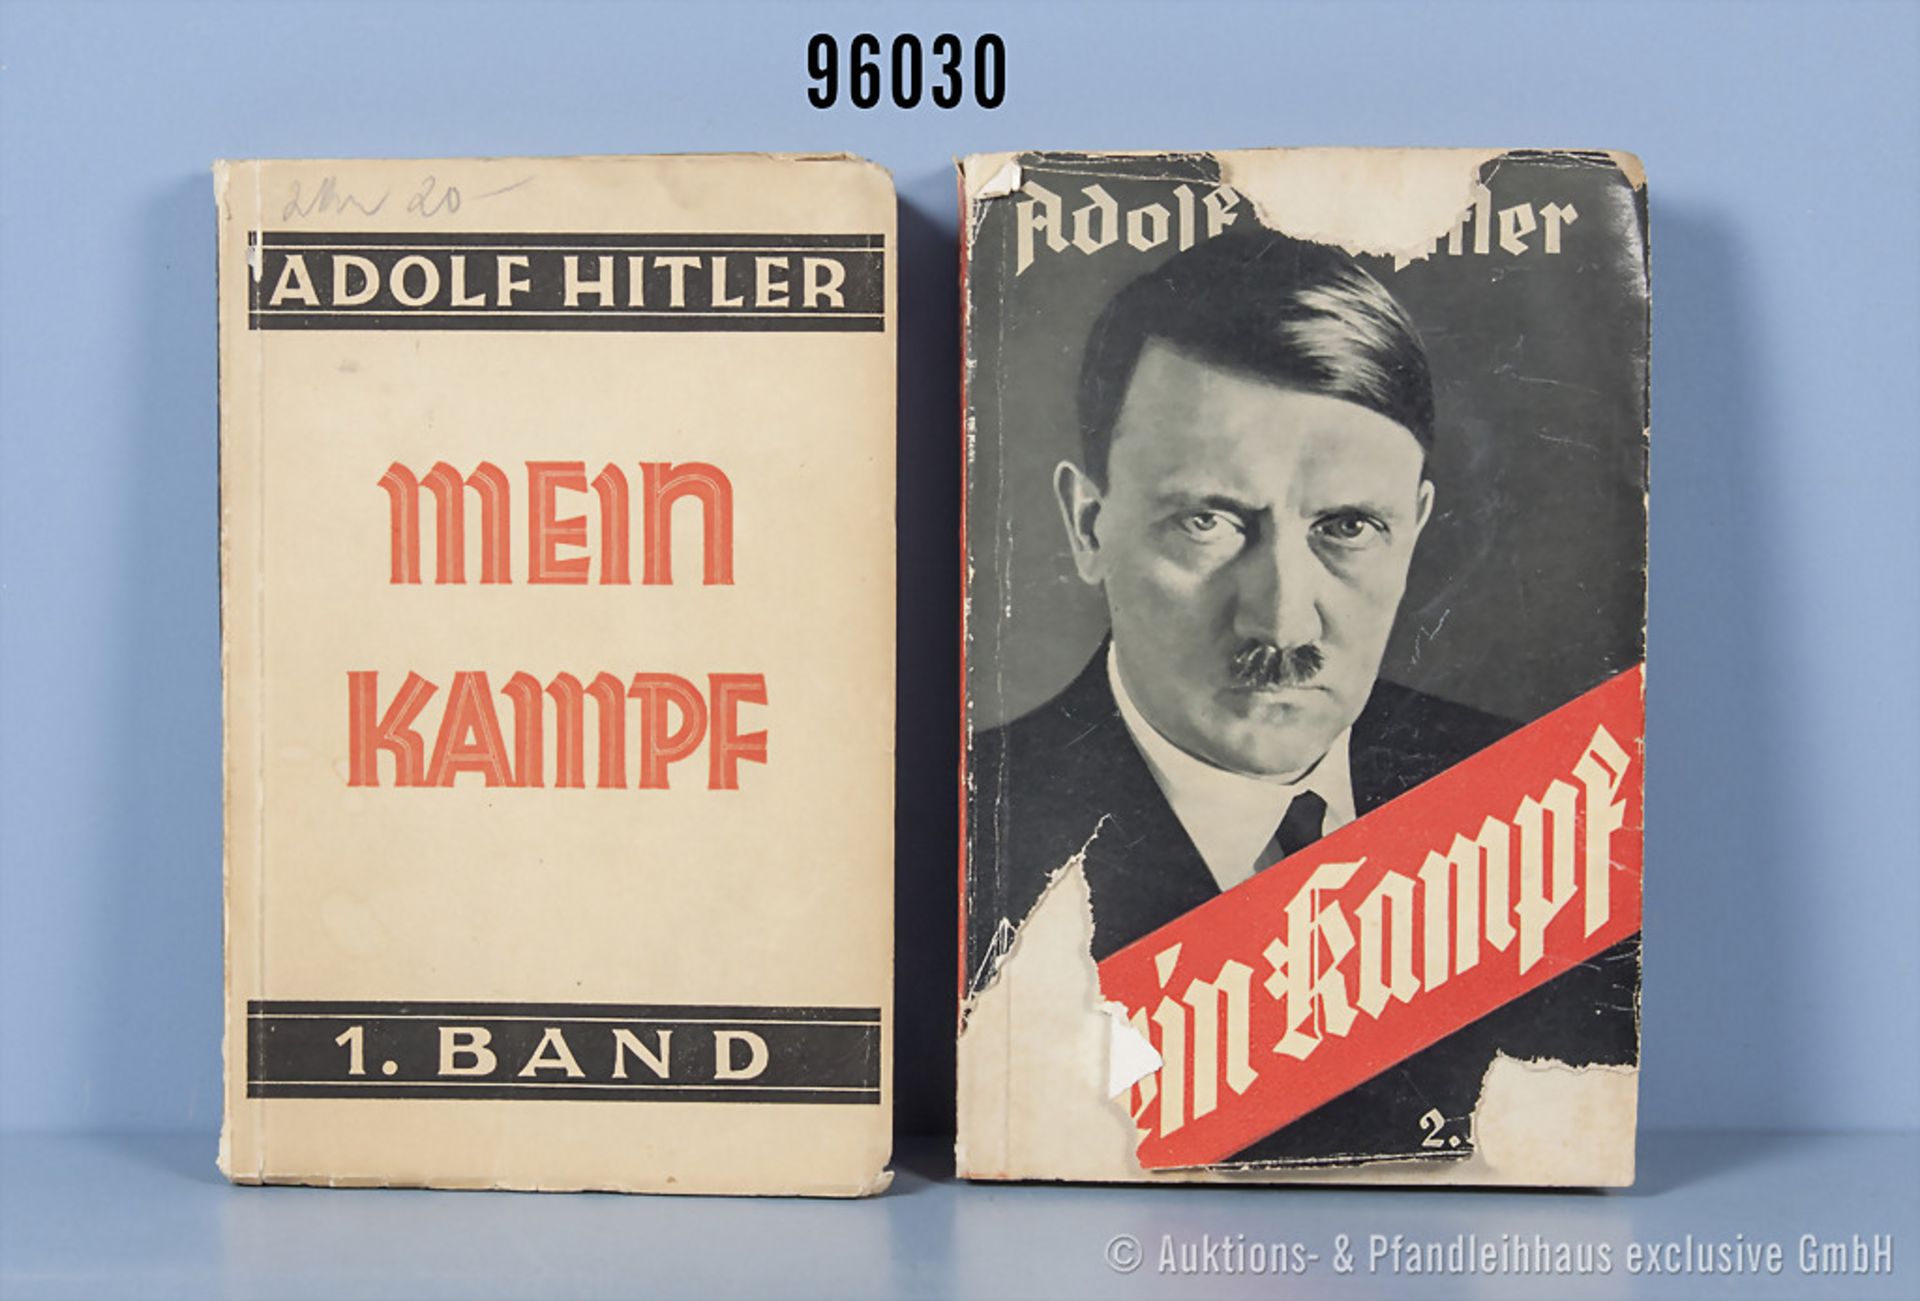 Konv. Adolf Hitler "Mein Kampf", 1. Band von 1932 und 2. Band von 1933, dieser mit...